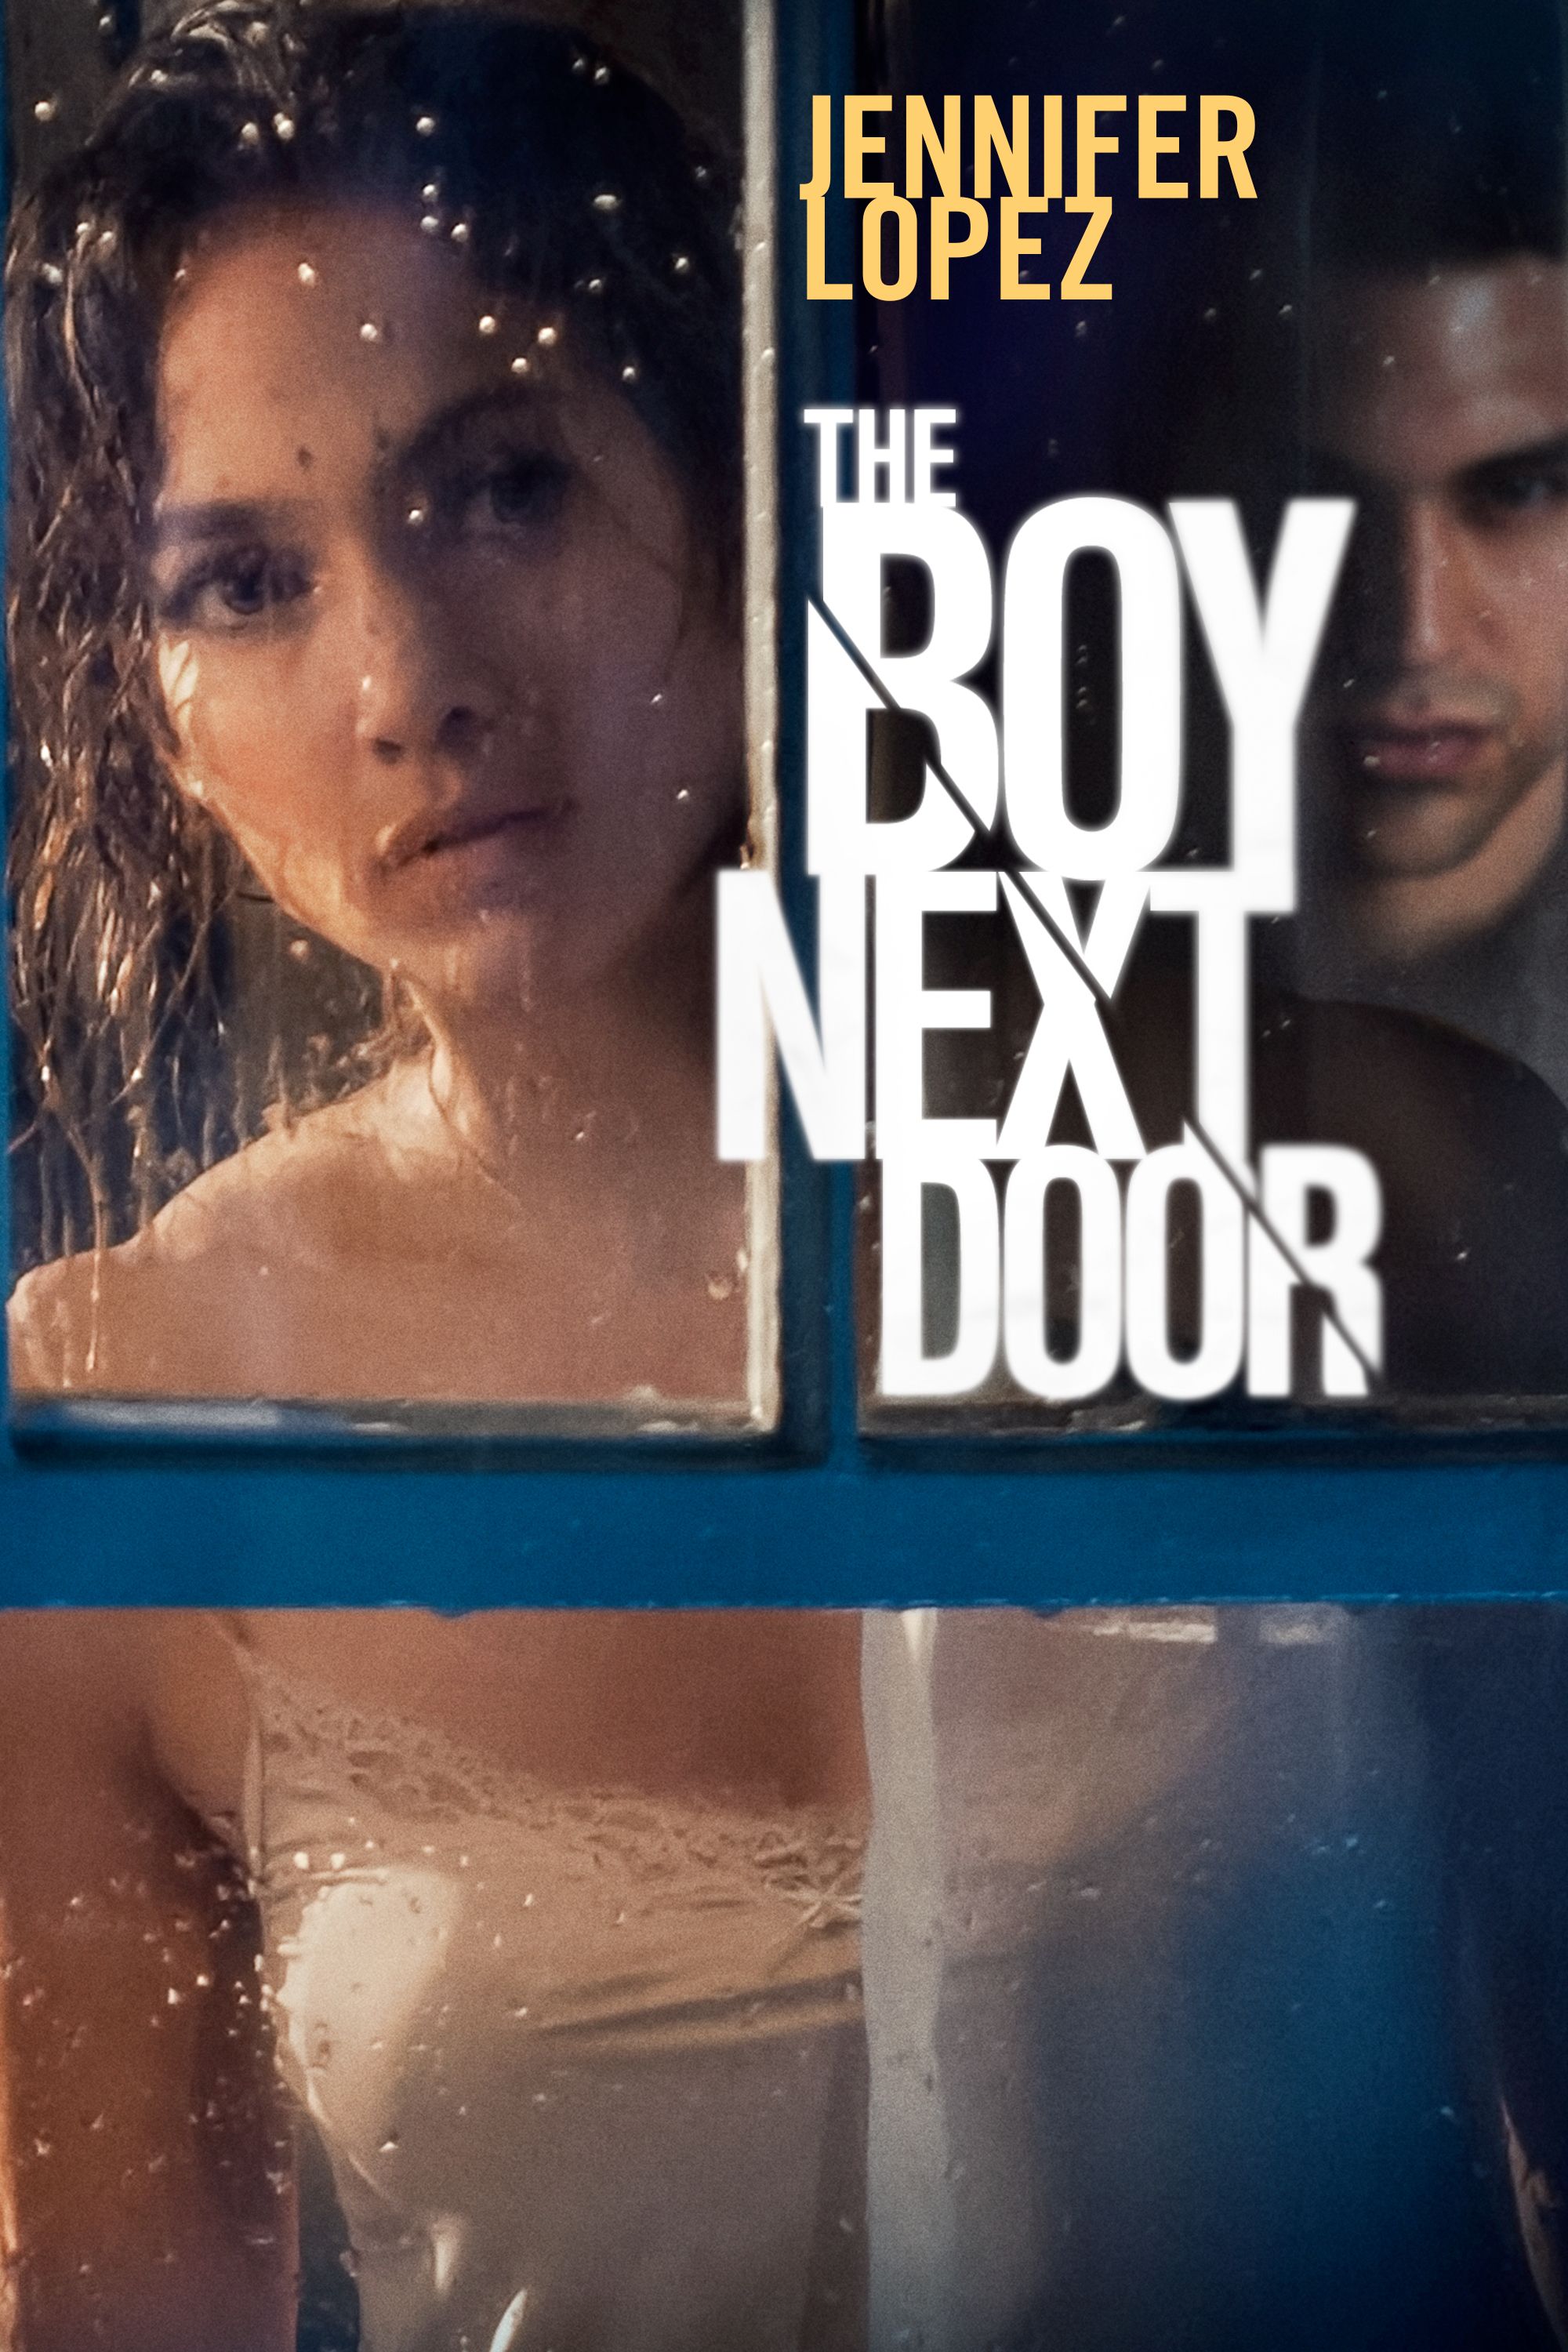 The boy next door movie free download